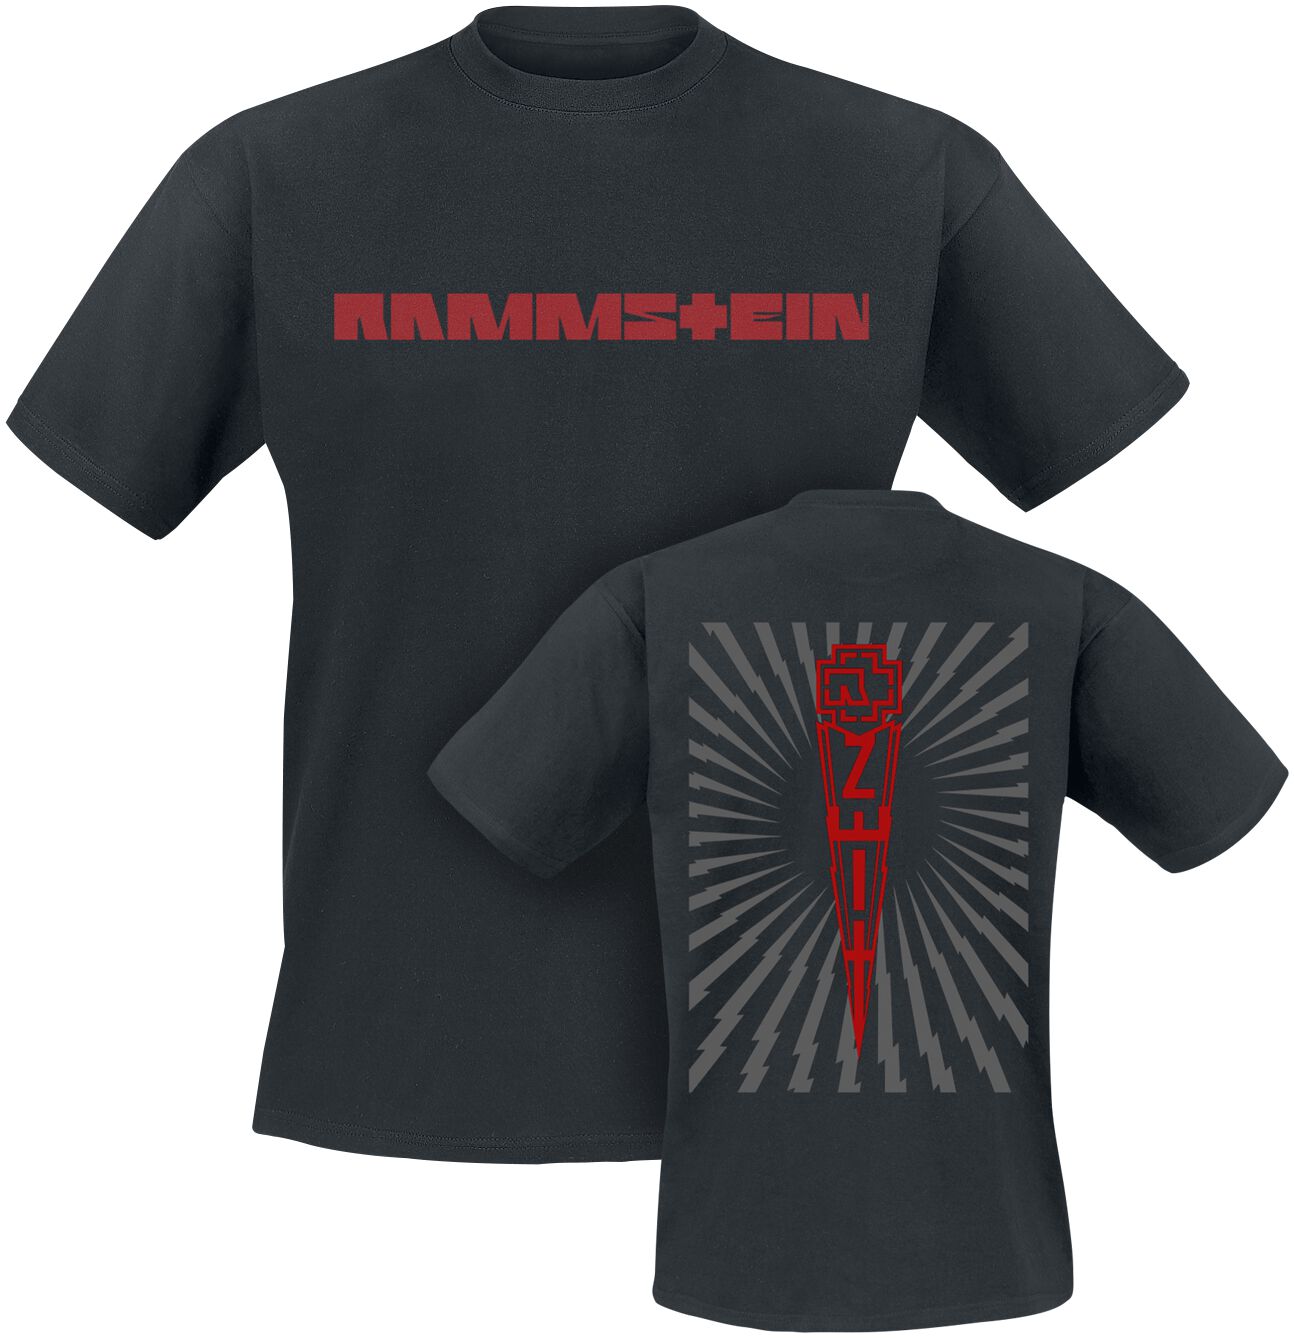 Rammstein T-Shirt - Zeit - S bis 5XL - für Männer - Größe XL - schwarz  - Lizenziertes Merchandise!